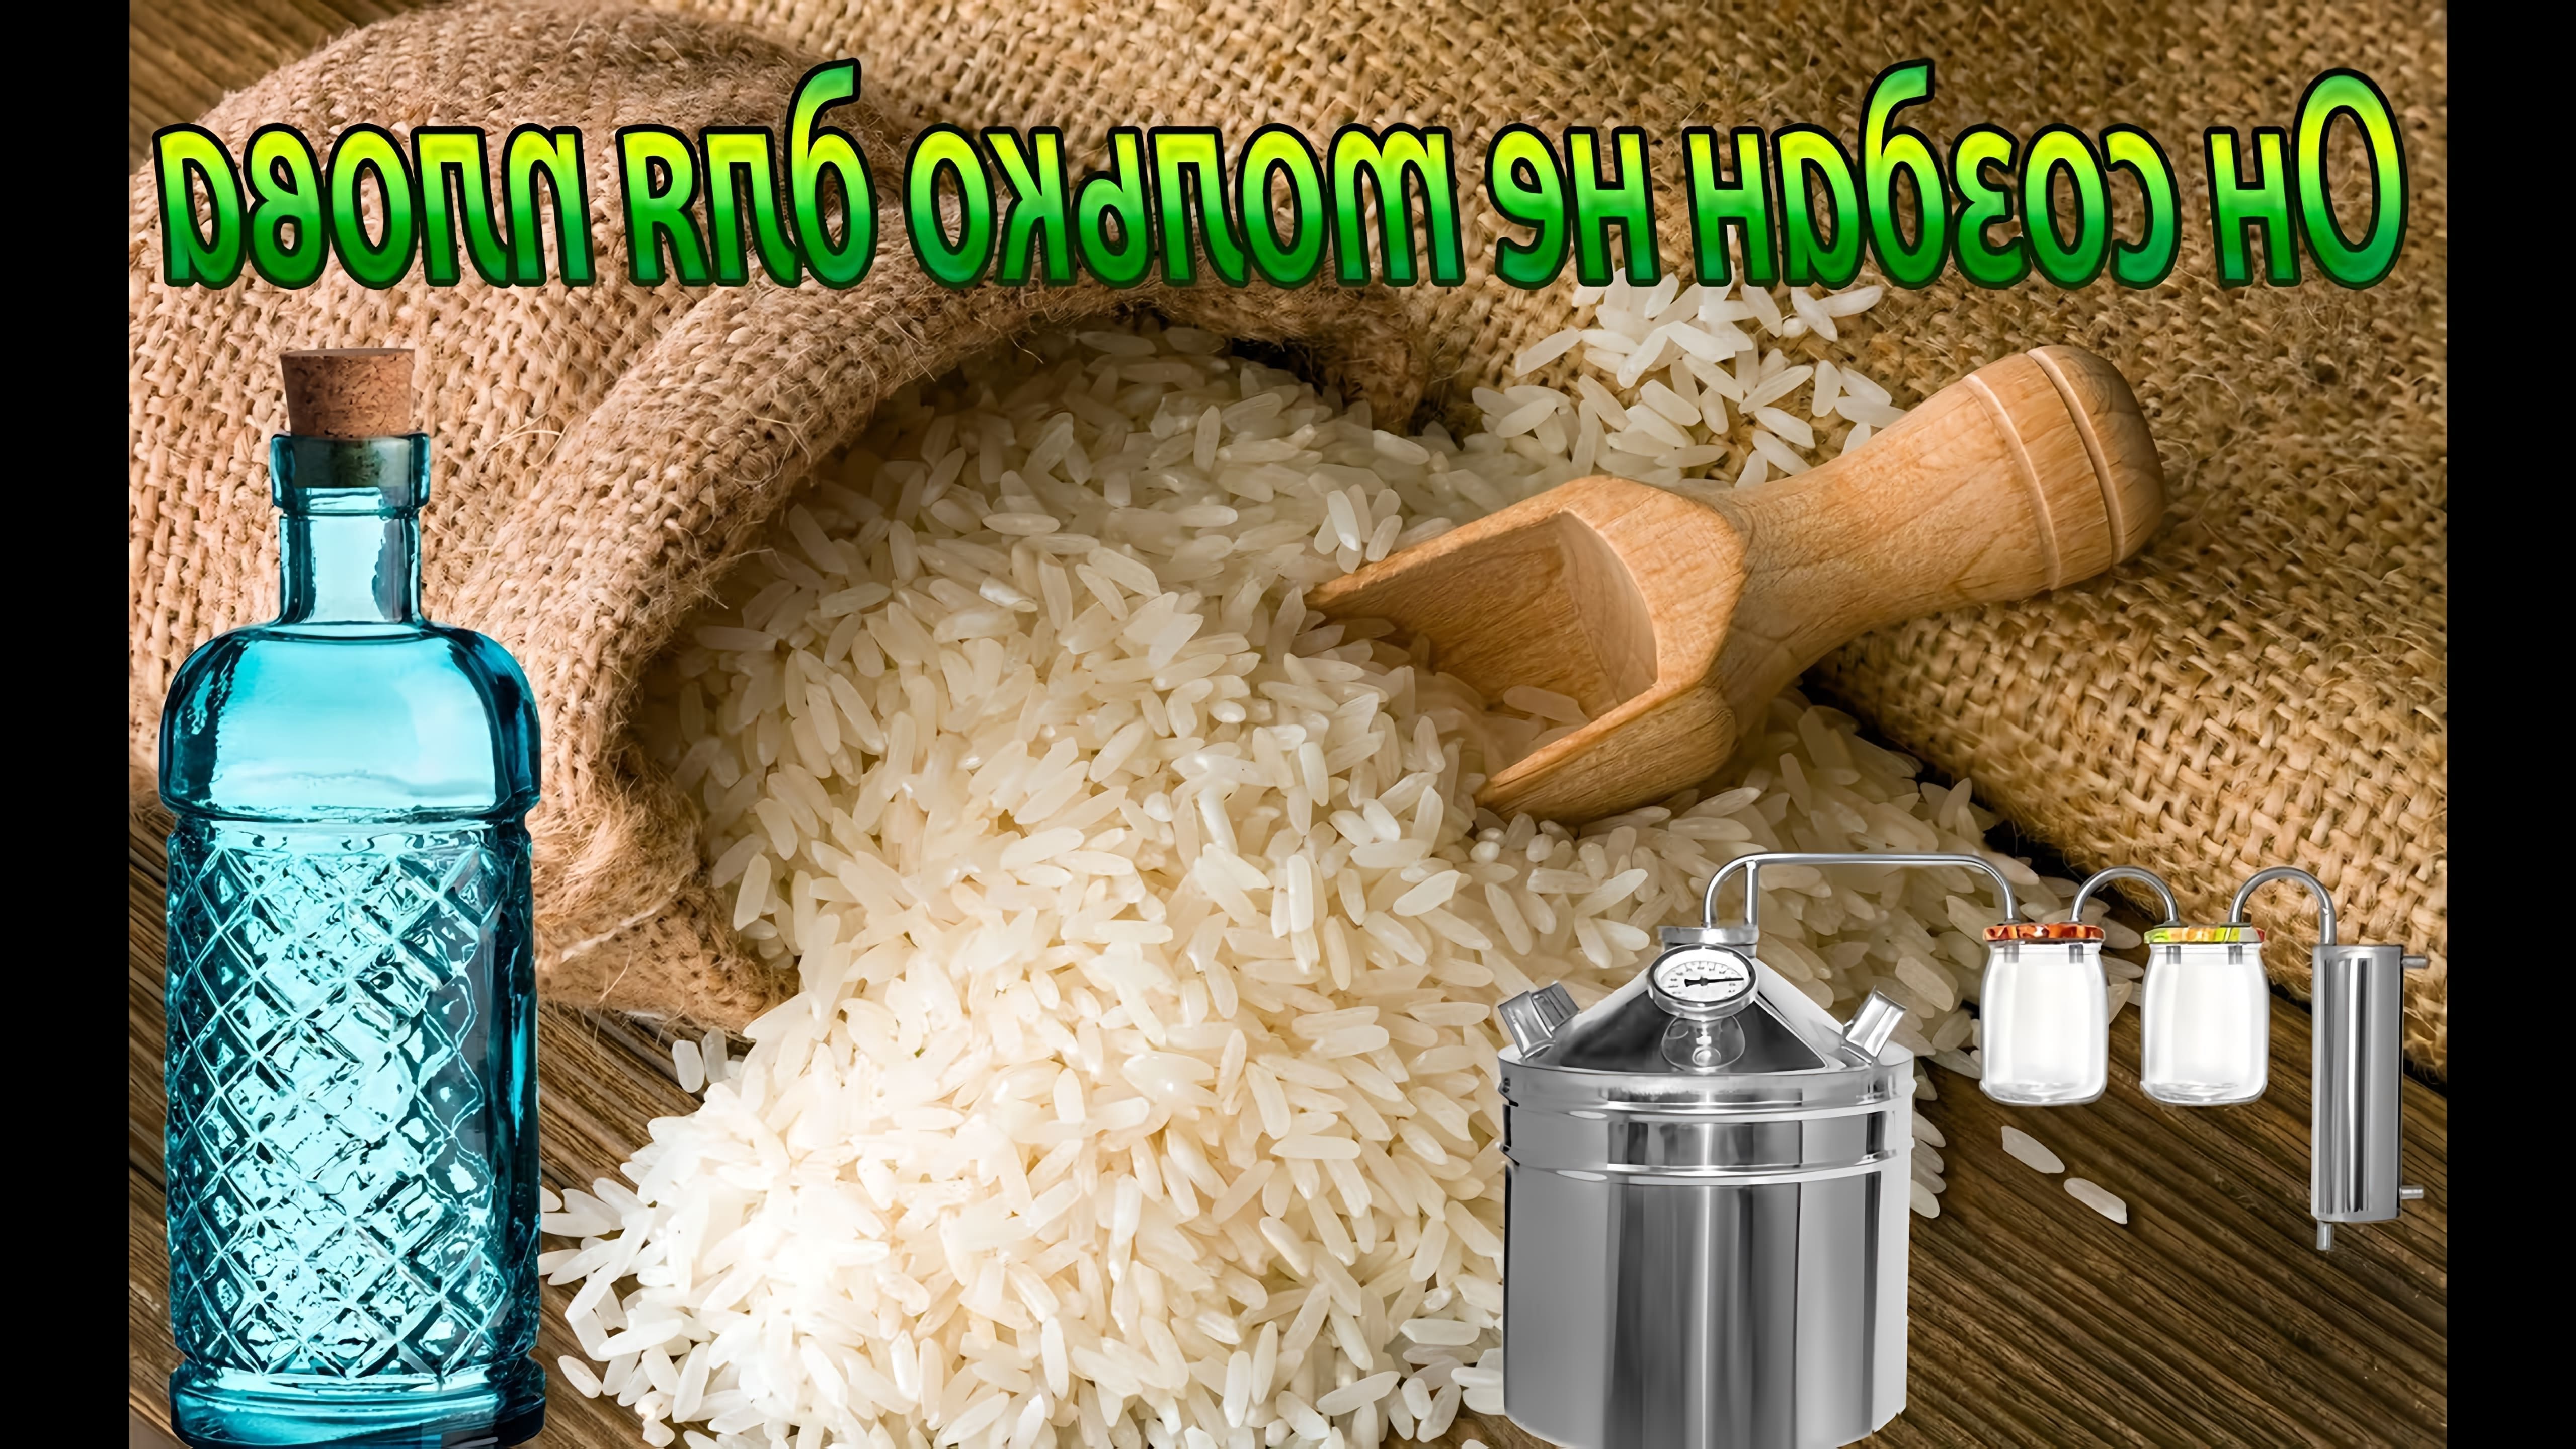 В этом видео рассказывается о приготовлении рисовой водки или браги на рисе